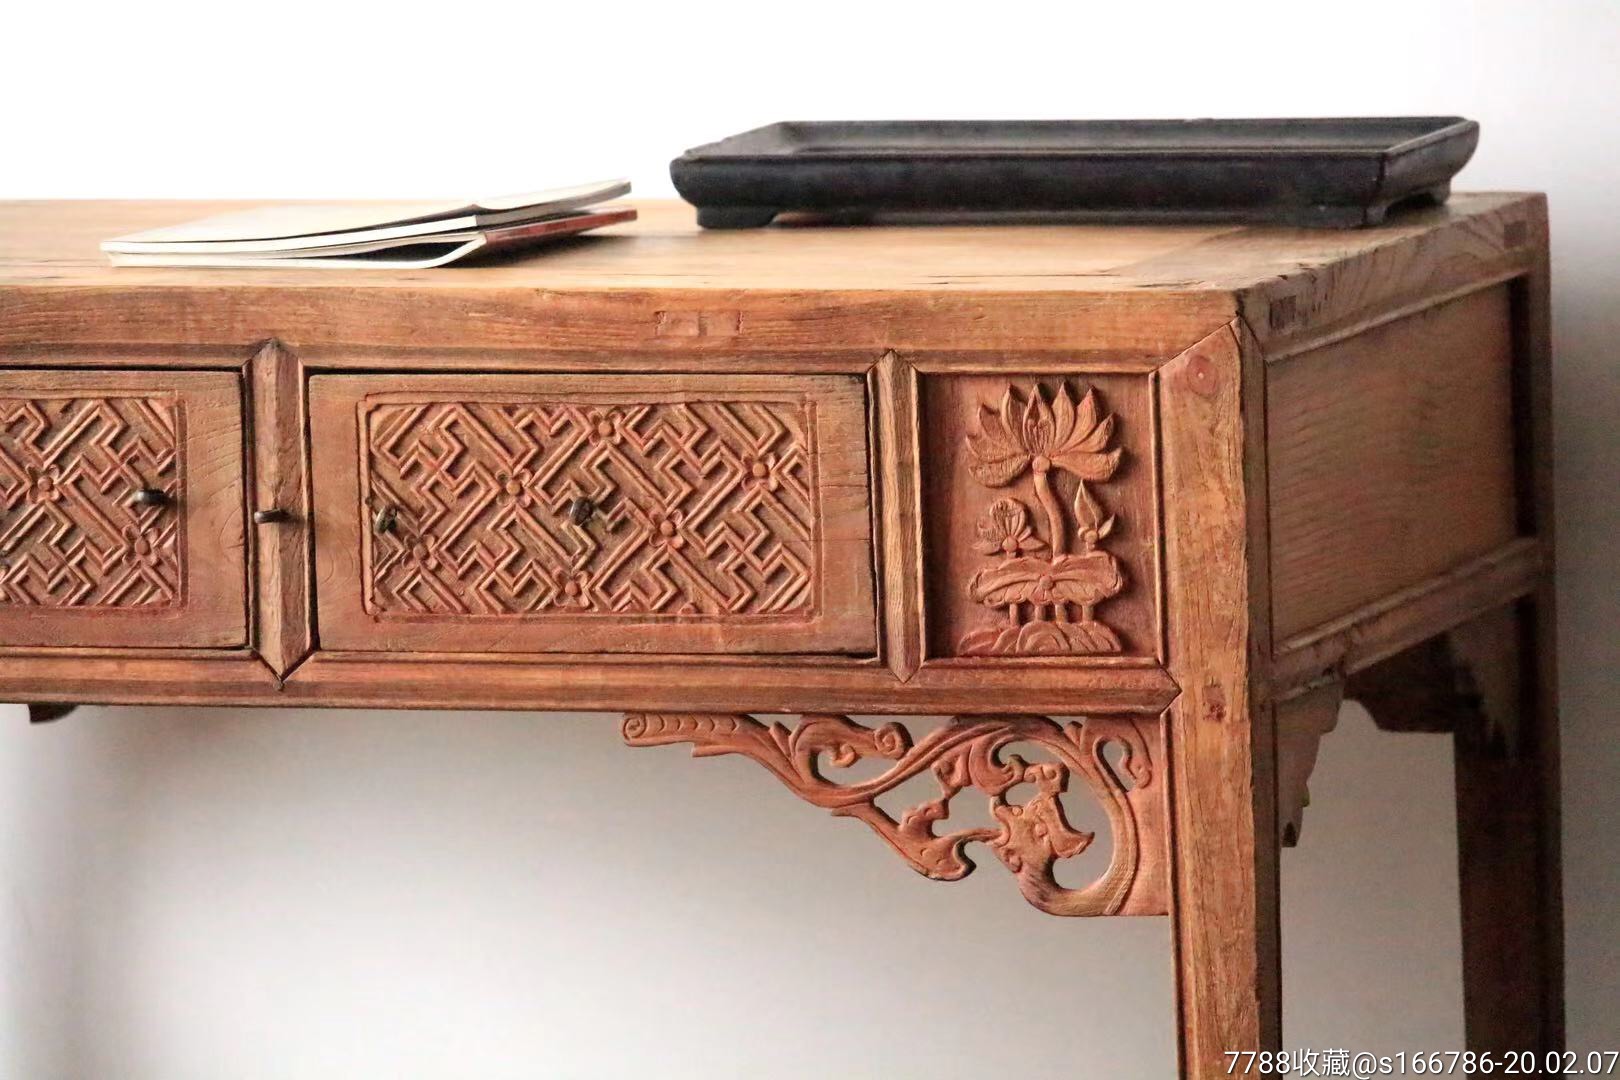 【卍字纹,书桌】此桌器型美观,抽屉卍字纹图案,两侧浮雕花卉以修饰